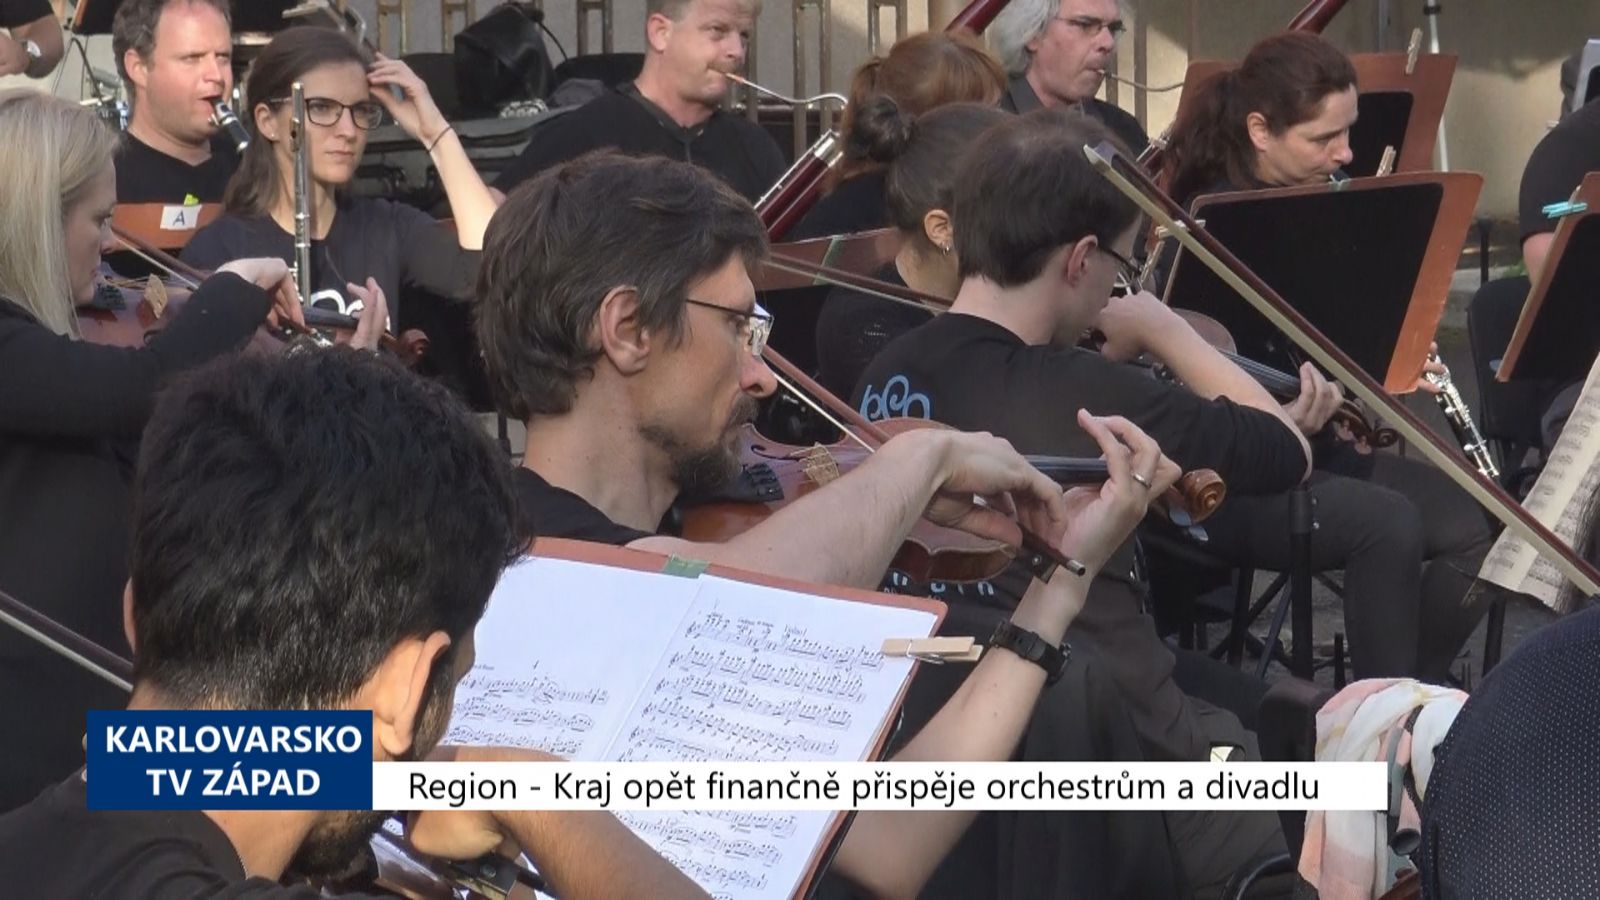 Region: Kraj opět finančně přispěje orchestrům a divadlu (TV Západ)